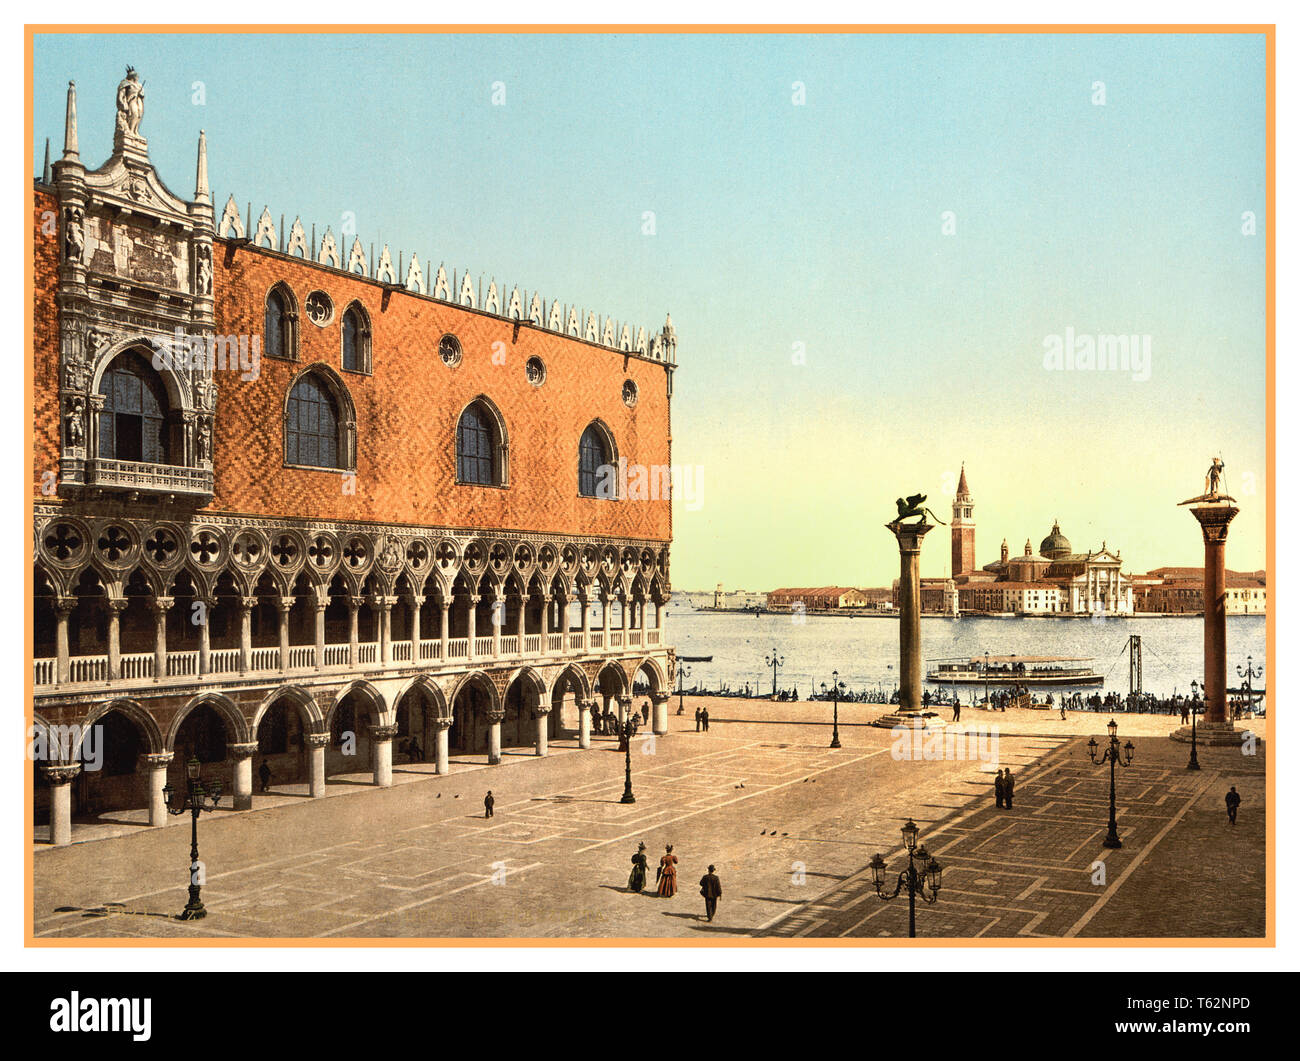 Jahrgang Archiv historische Venedig Photochrom der Dogenpalast und der Piazzetta mit Hafen Venedig, San Giorgio Maggiore, Palladio Kirche im Hintergrund Markusplatz Venedig Italien 1890 Stockfoto